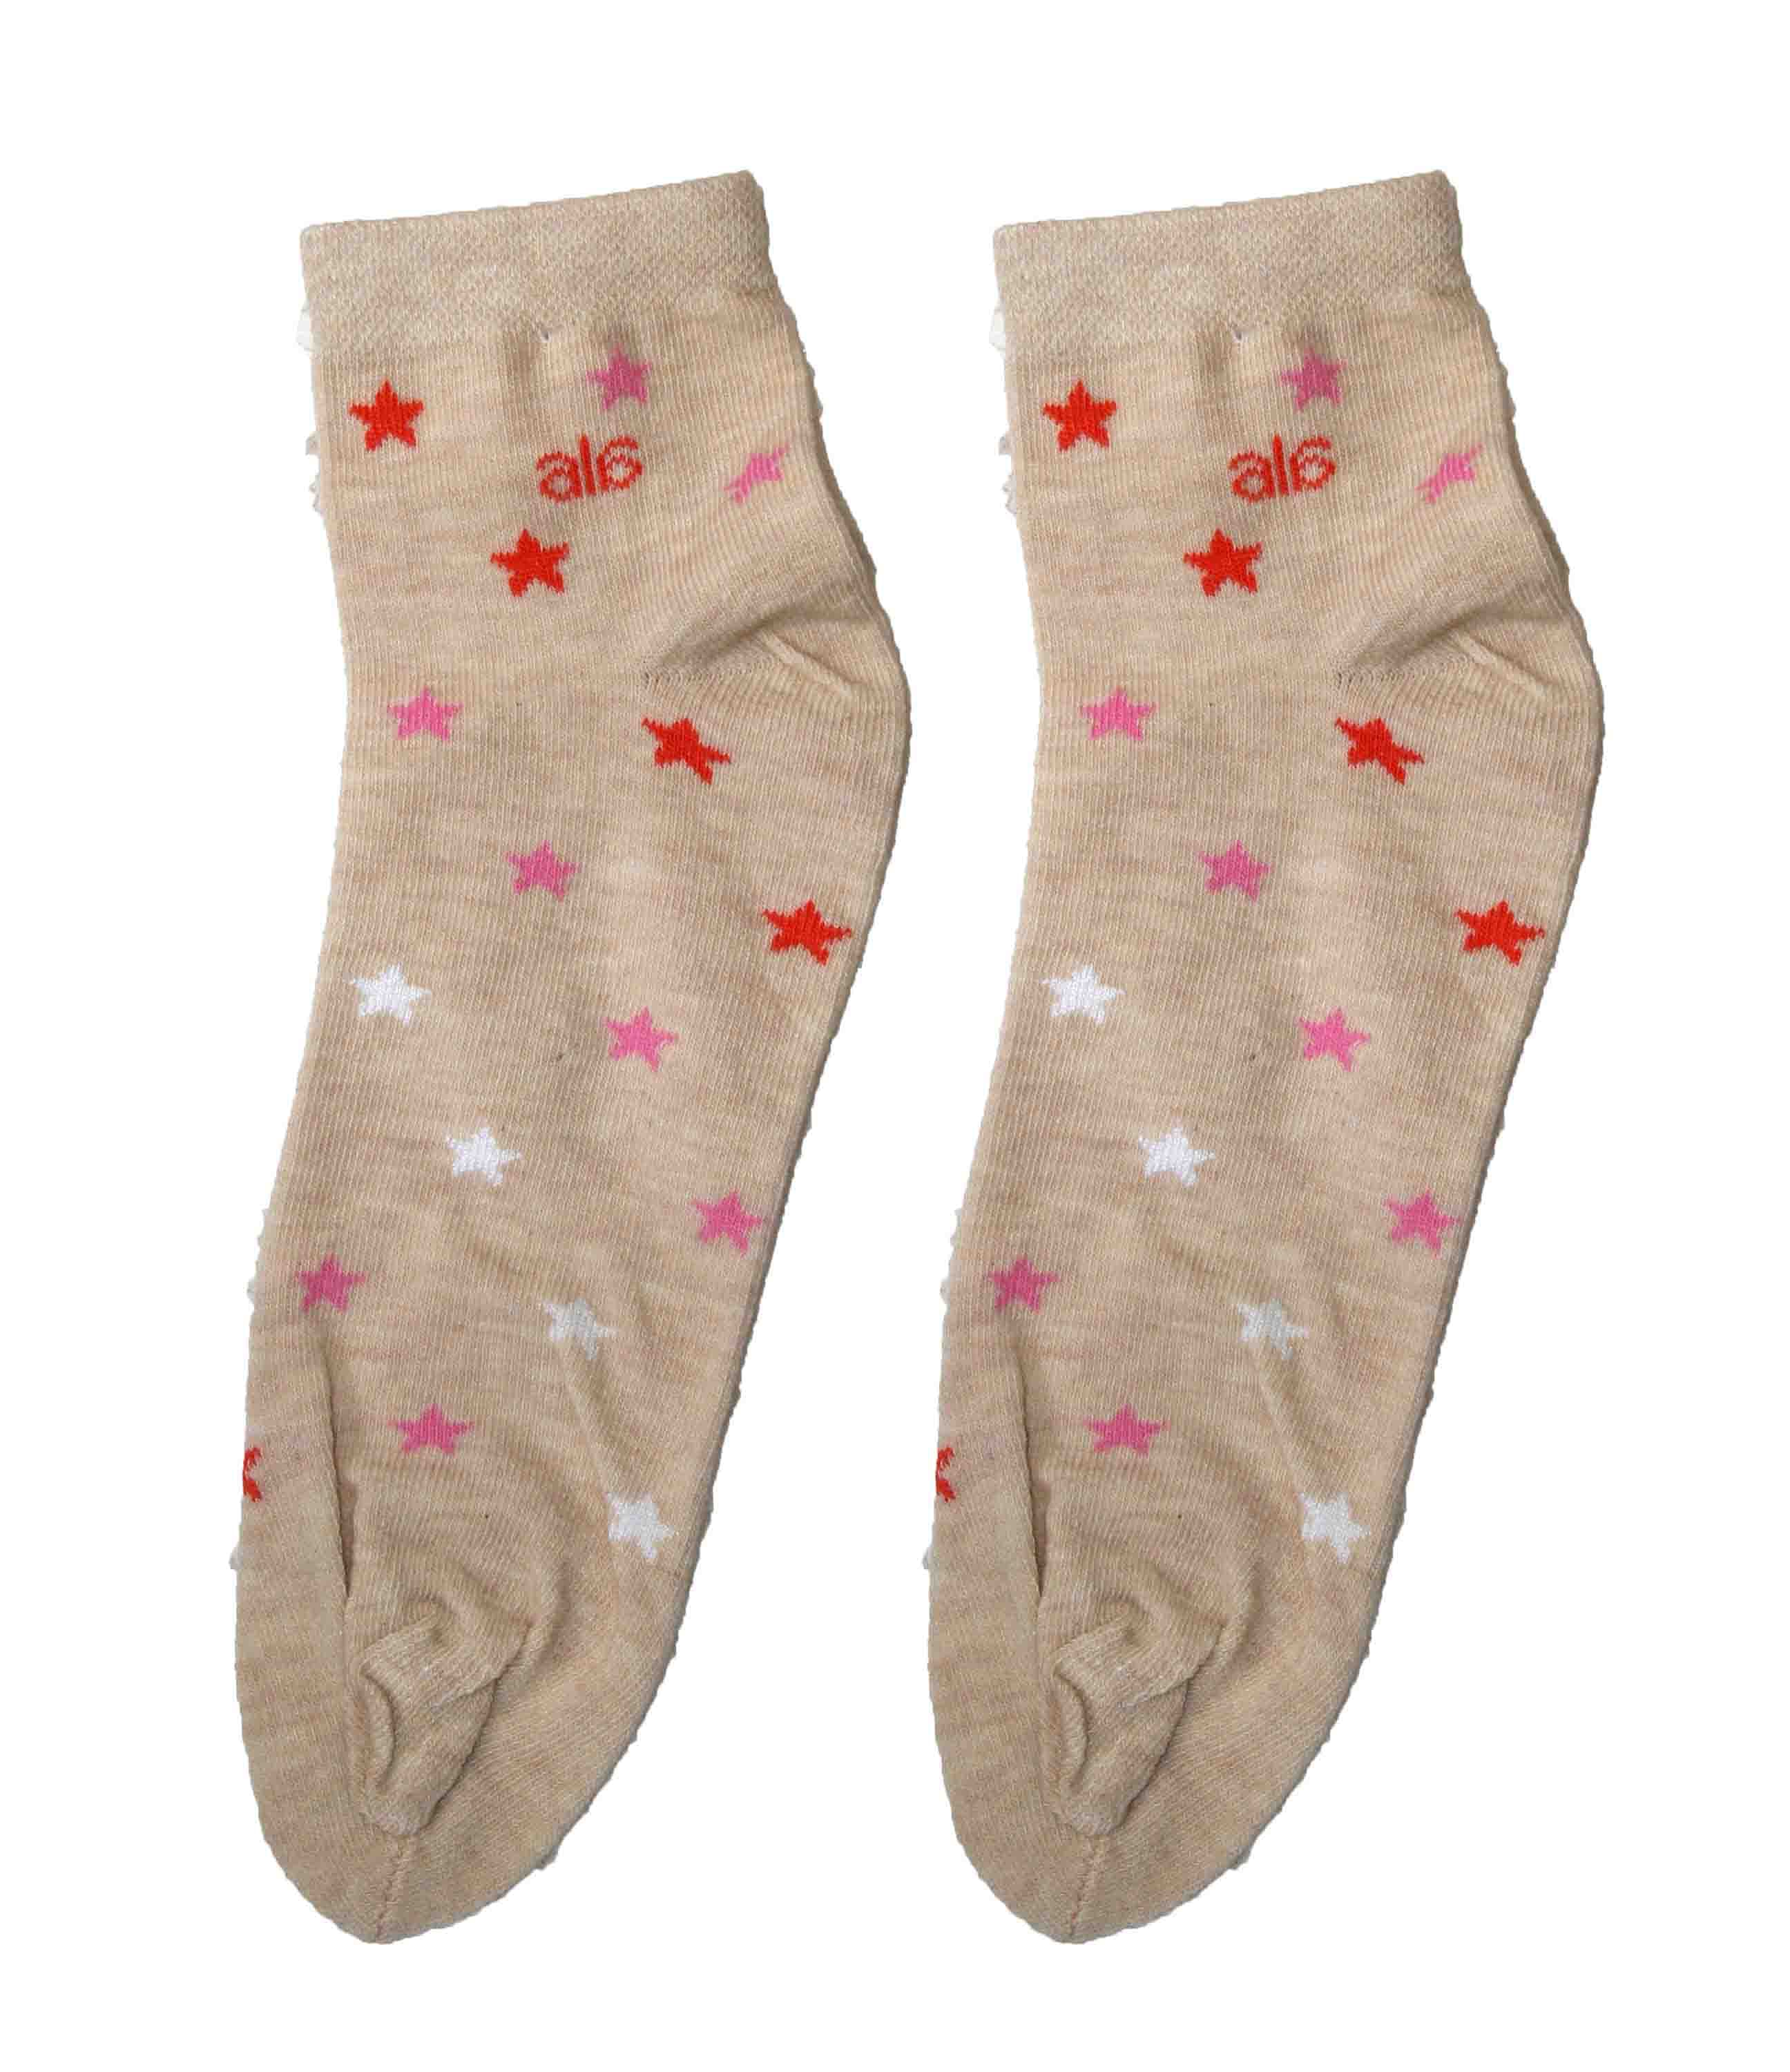 Ellie Wmn ankle Socks - Design-BG-Wmn-DESIGN-005-PCH